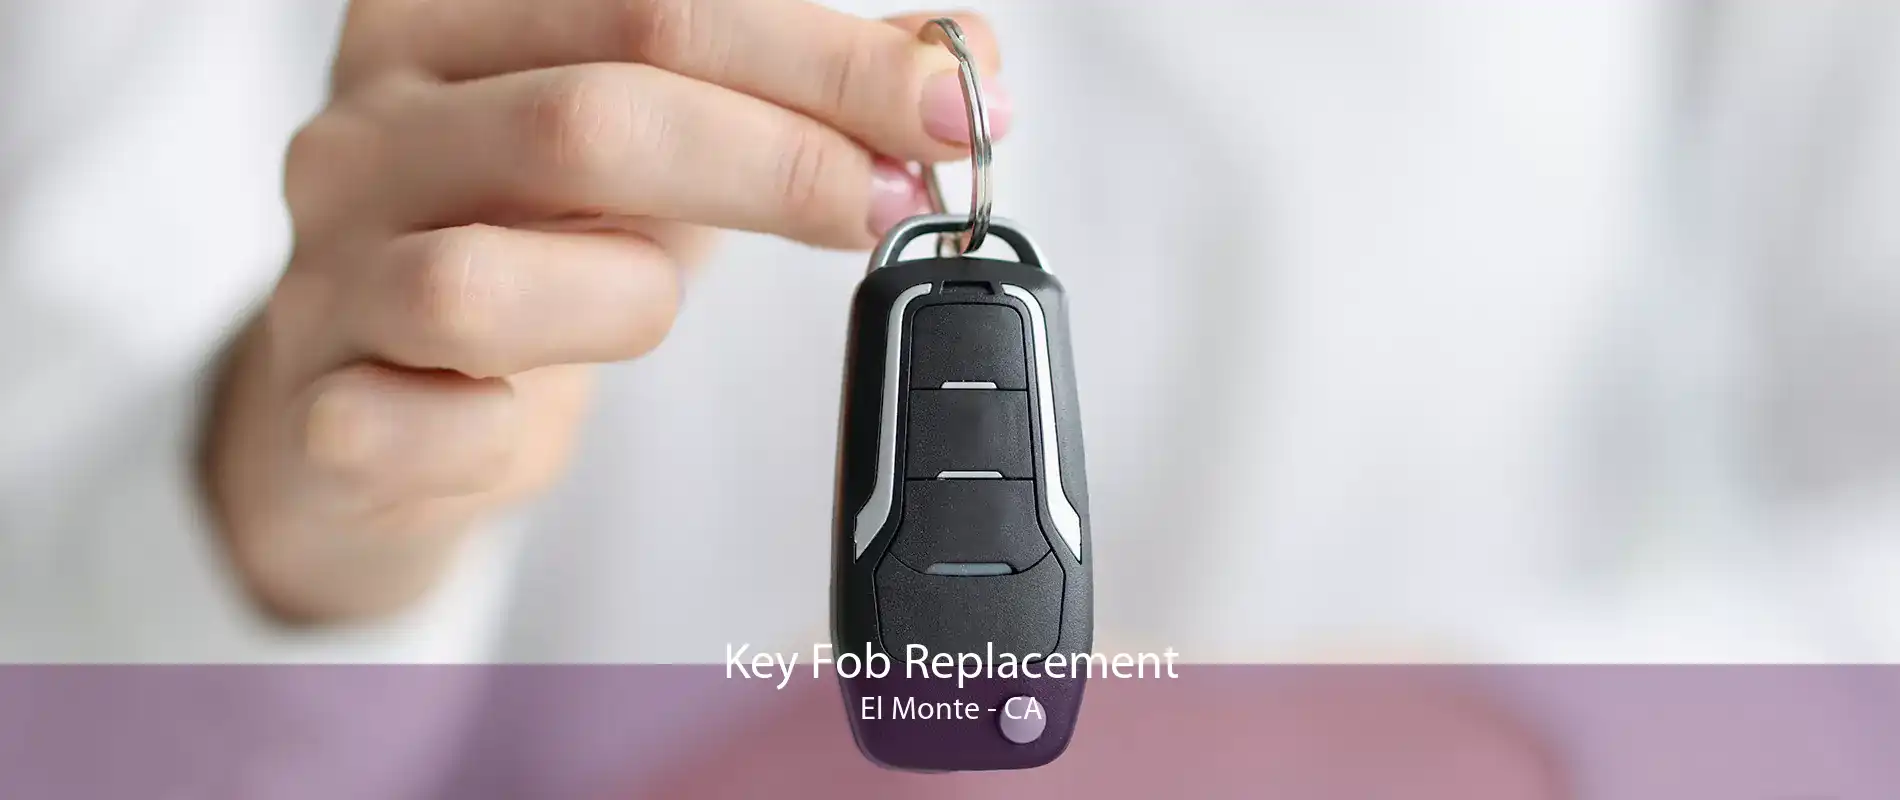 Key Fob Replacement El Monte - CA